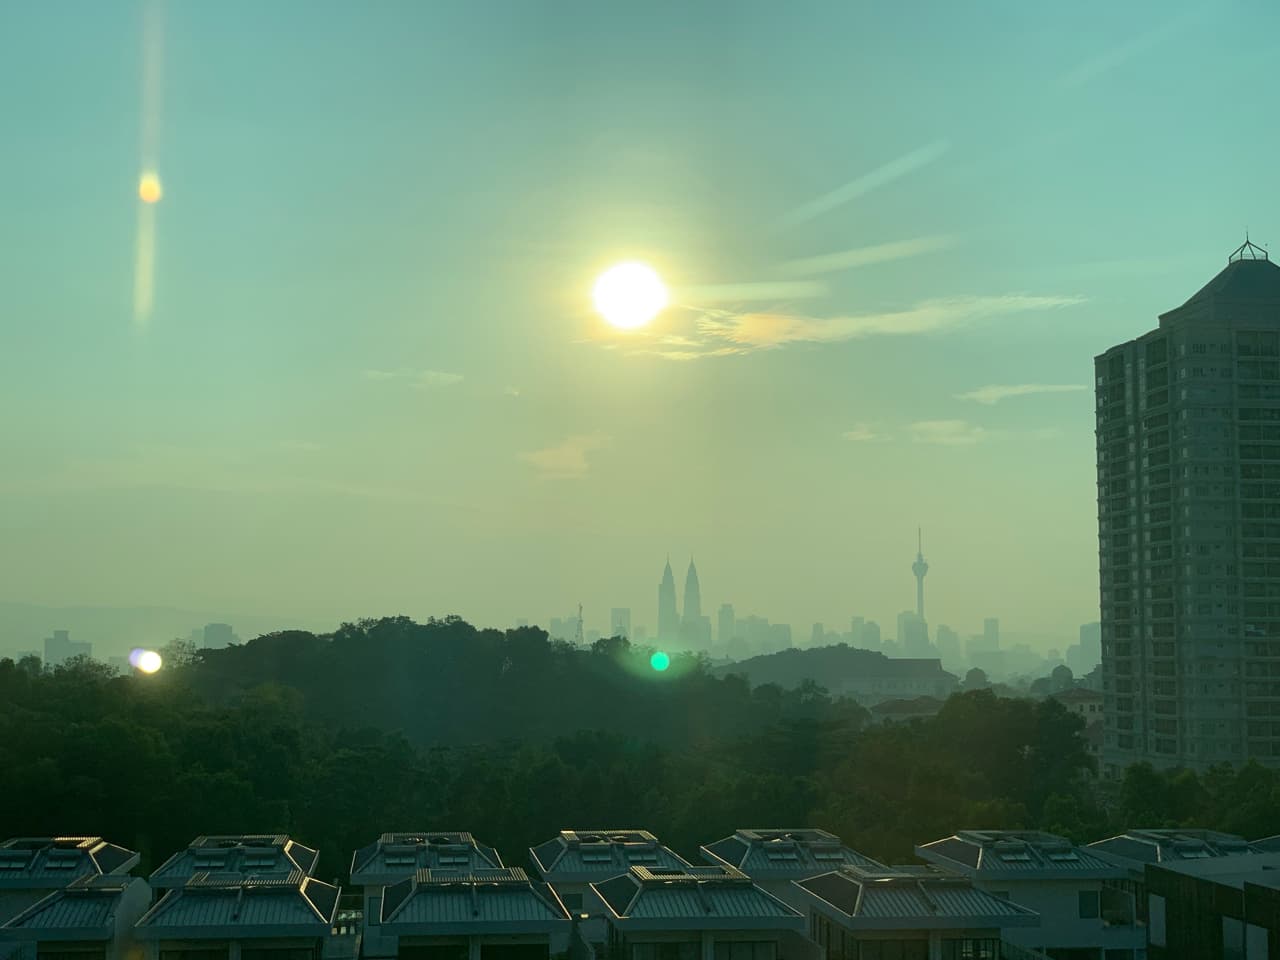 マレーシアの大気汚染ヘイズ